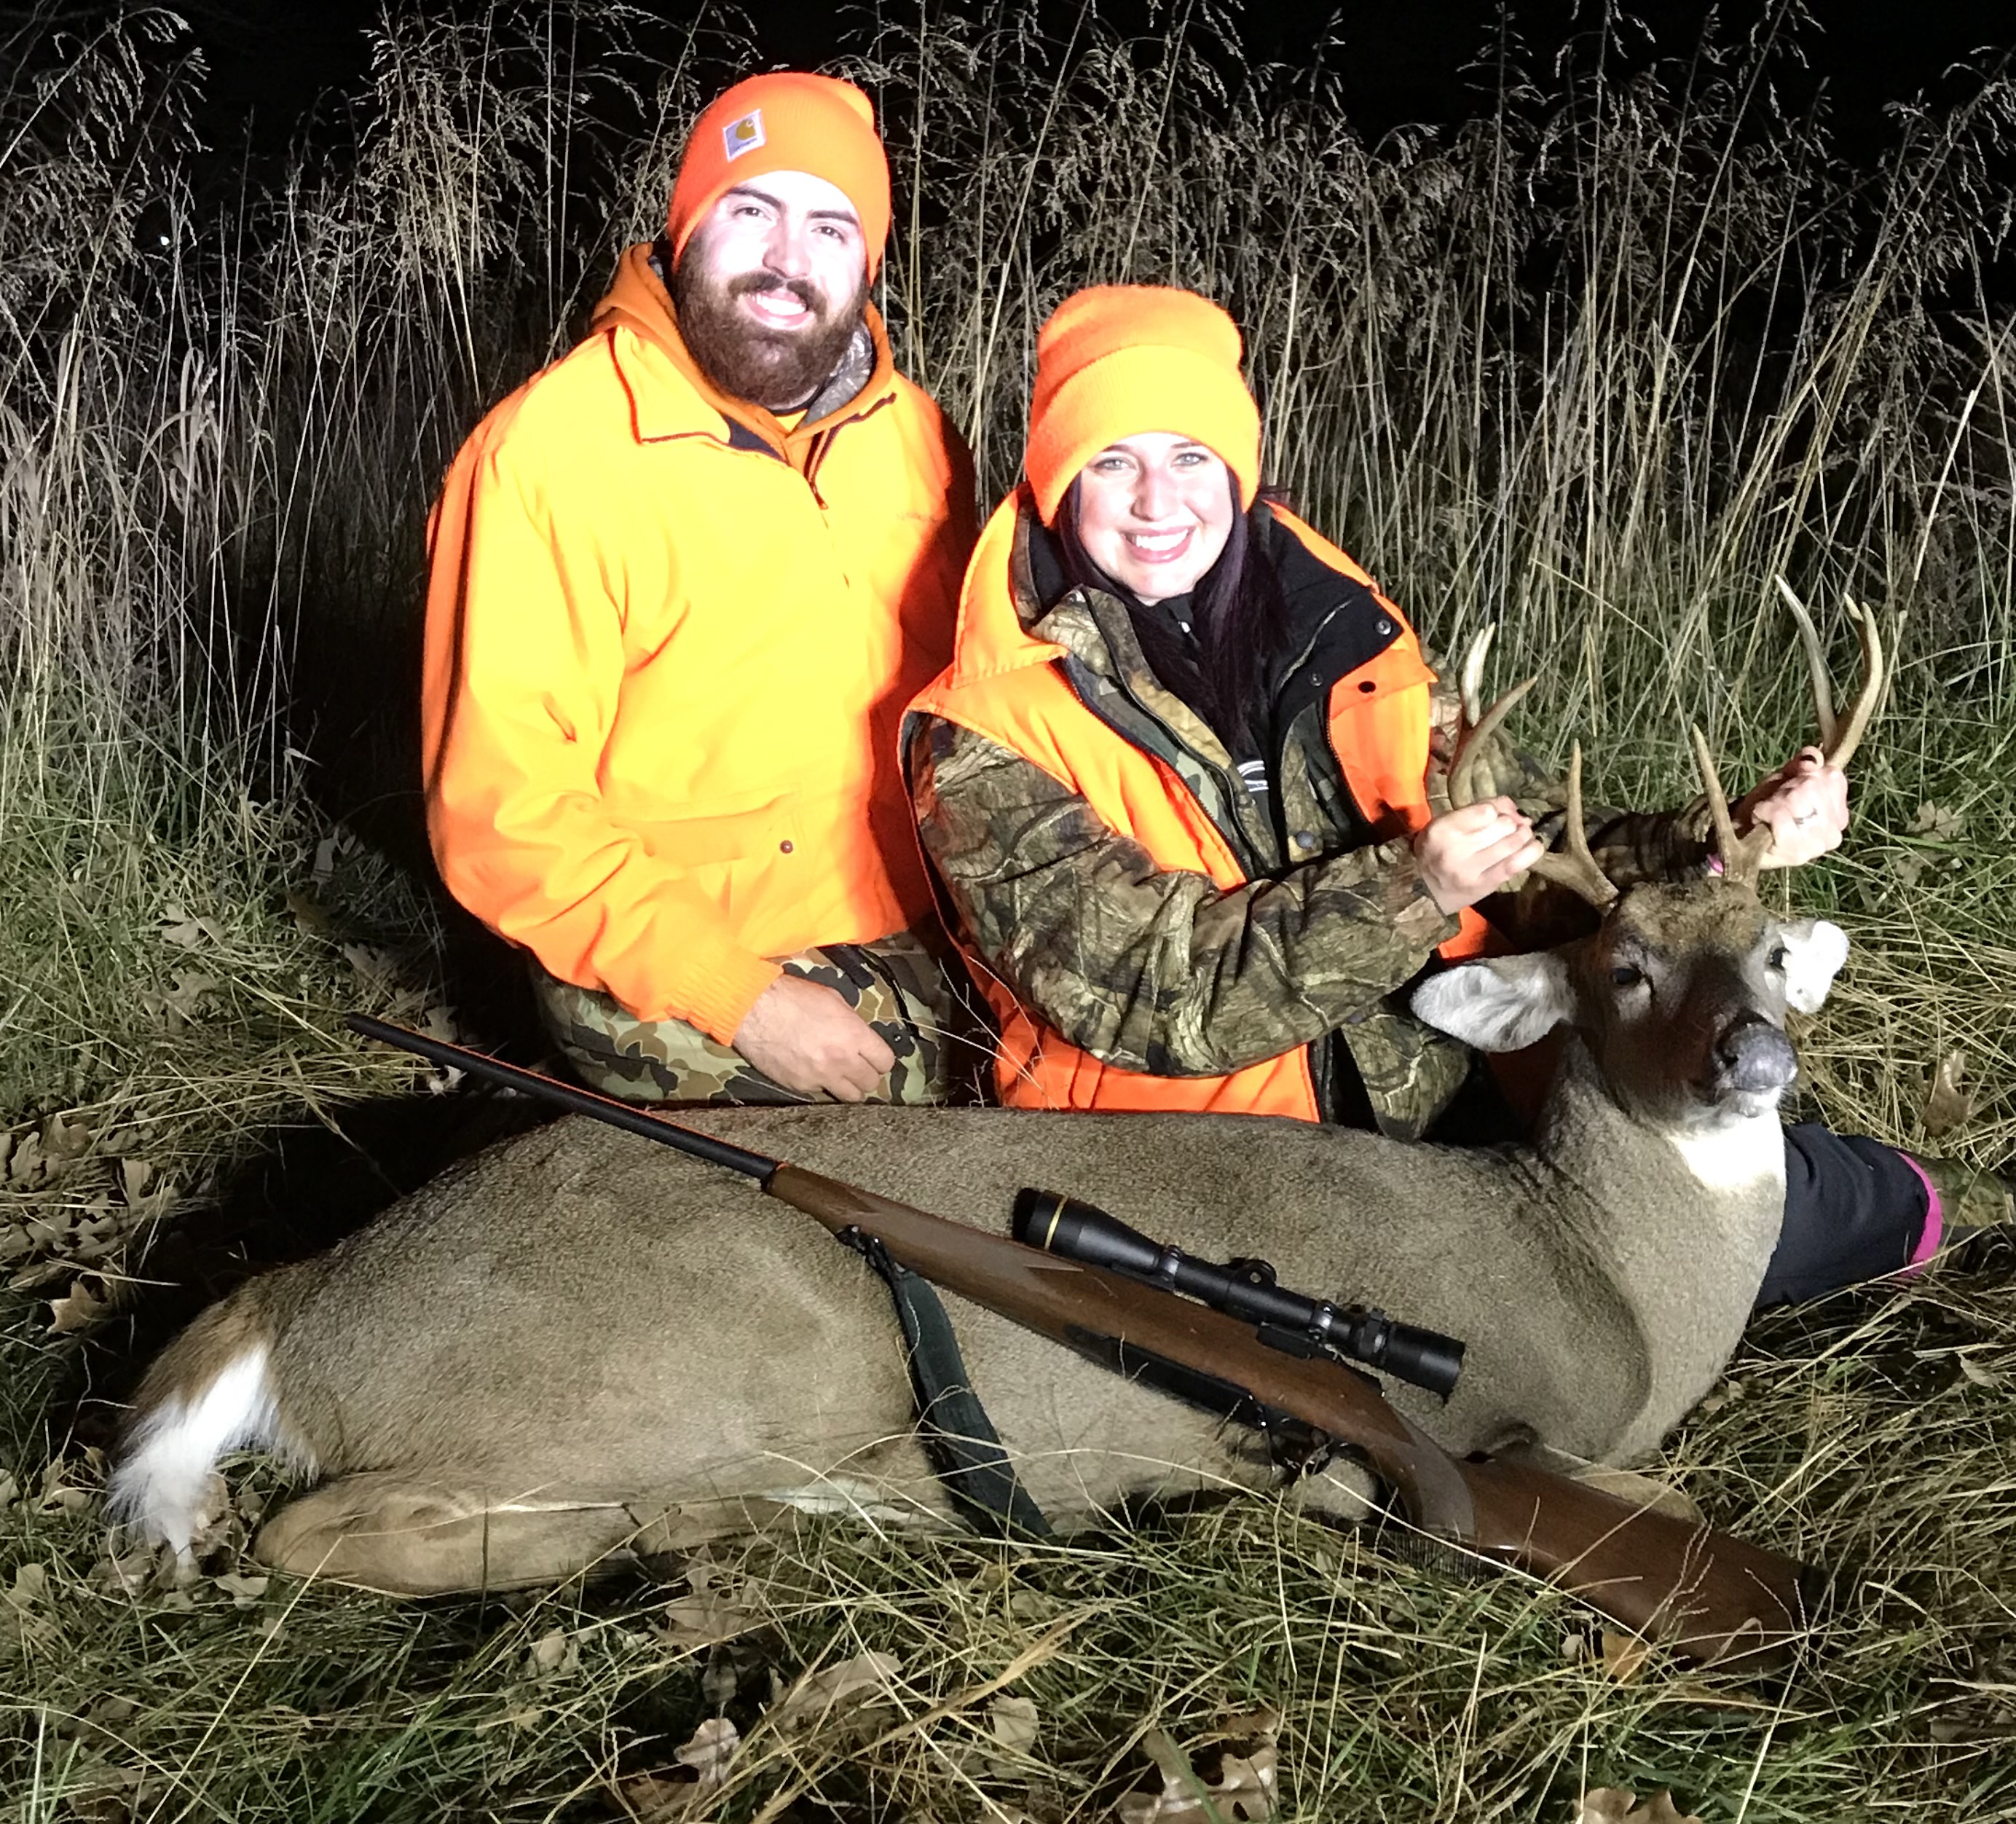 Sydney Fryer, FNP-C, and her husband deer hunting